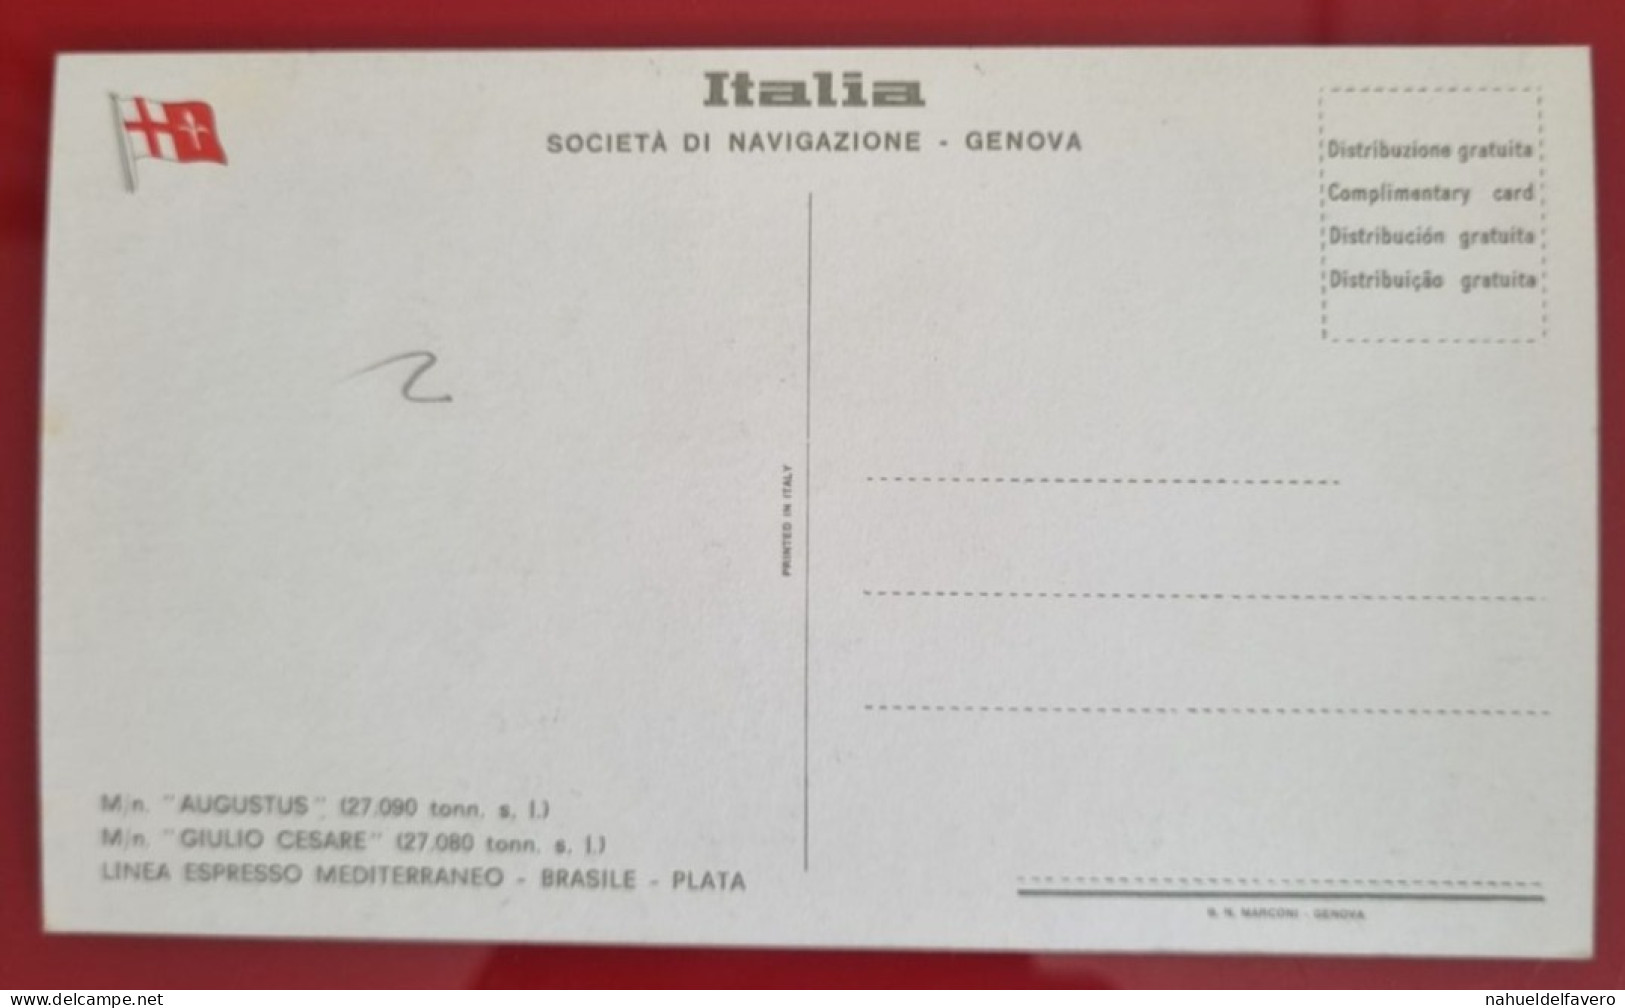 Carta Postale Non Circulée - ITALIA - SOCIETÁ DI NAVEGAZIONE, GENOVA - M/n GIULIO CESARE (27.080 Tonn. S. L.) - Péniches